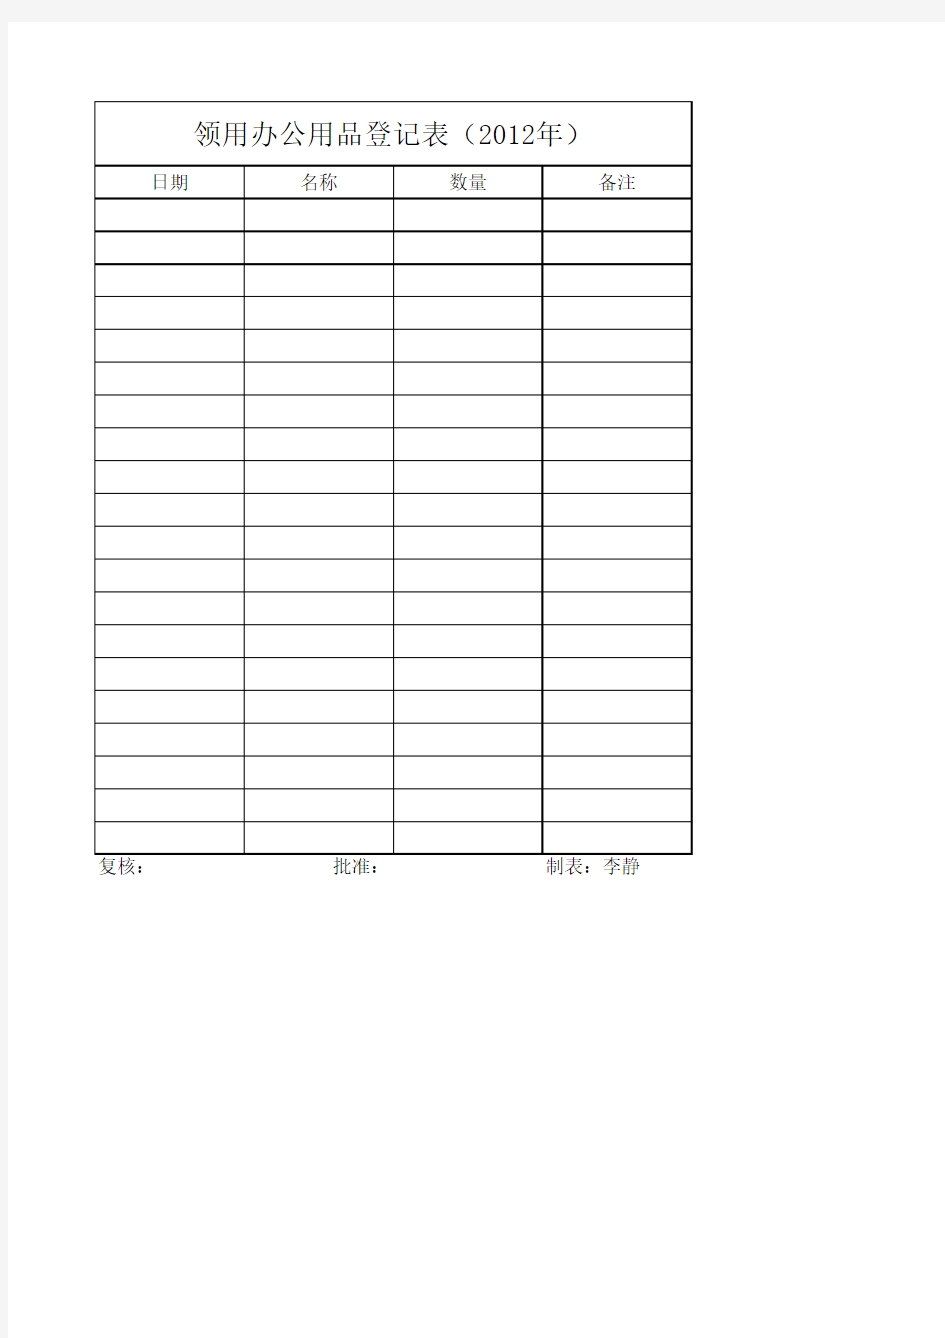 领用办公用品登记表 Excel 工作簿